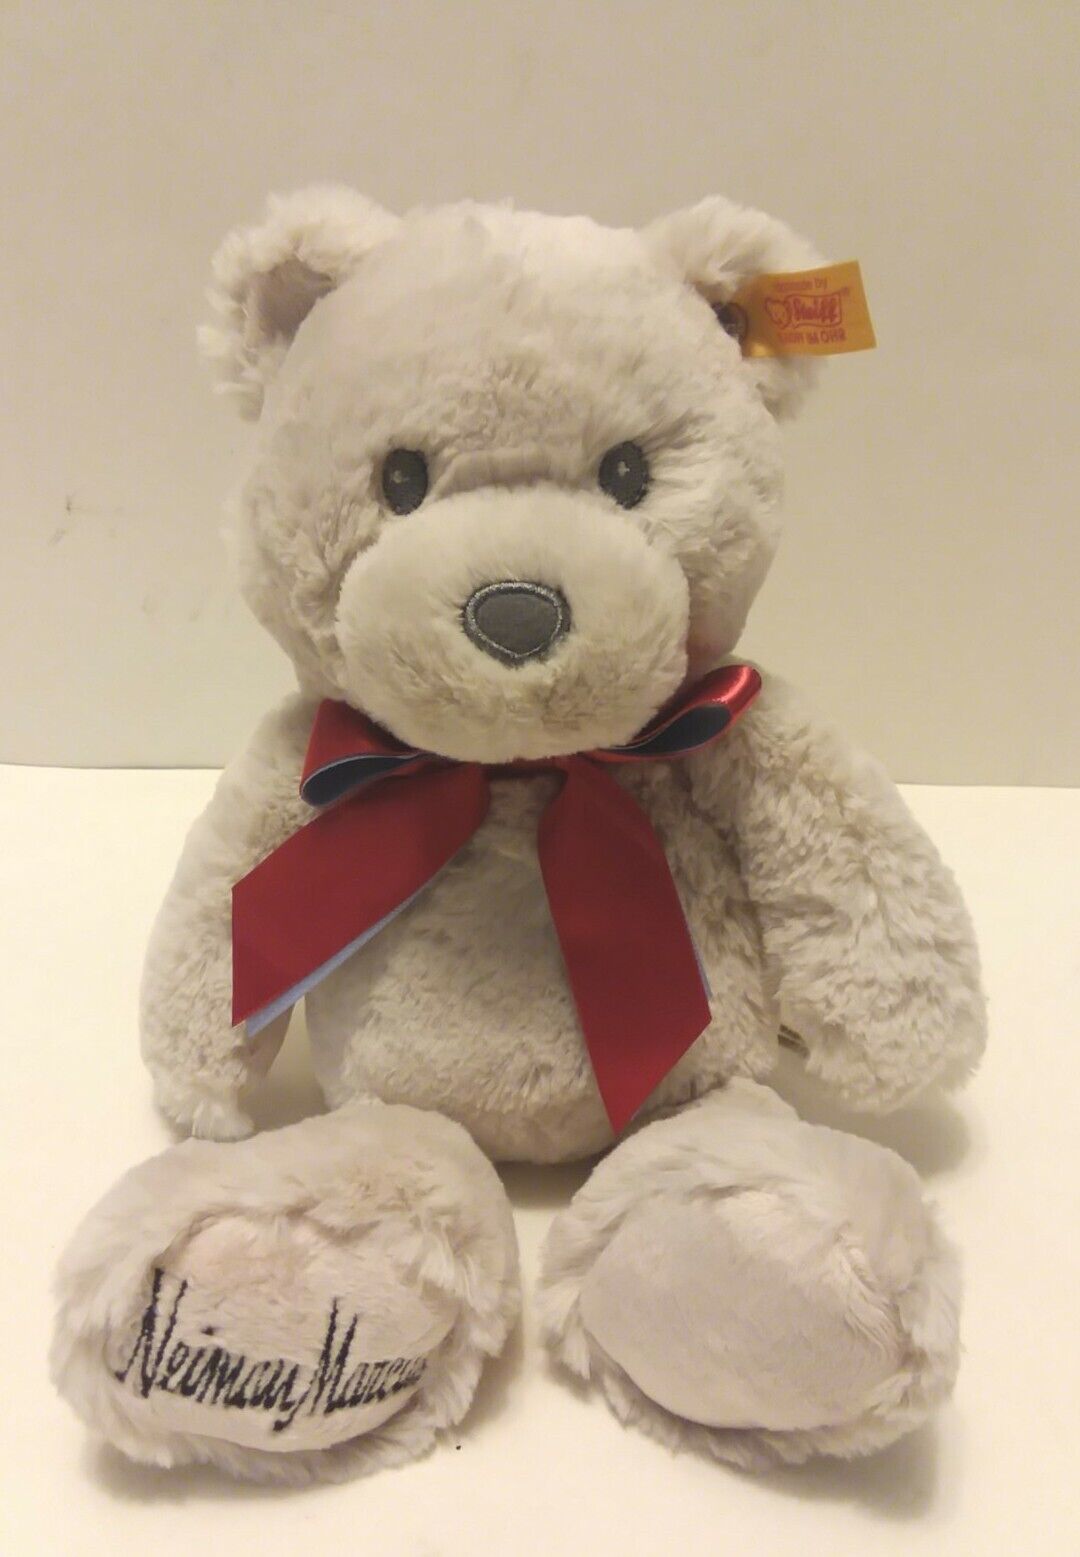 New With Tags Steiff Neiman Marcus Tan the Bear teddy stuffed animal 12” Steiff